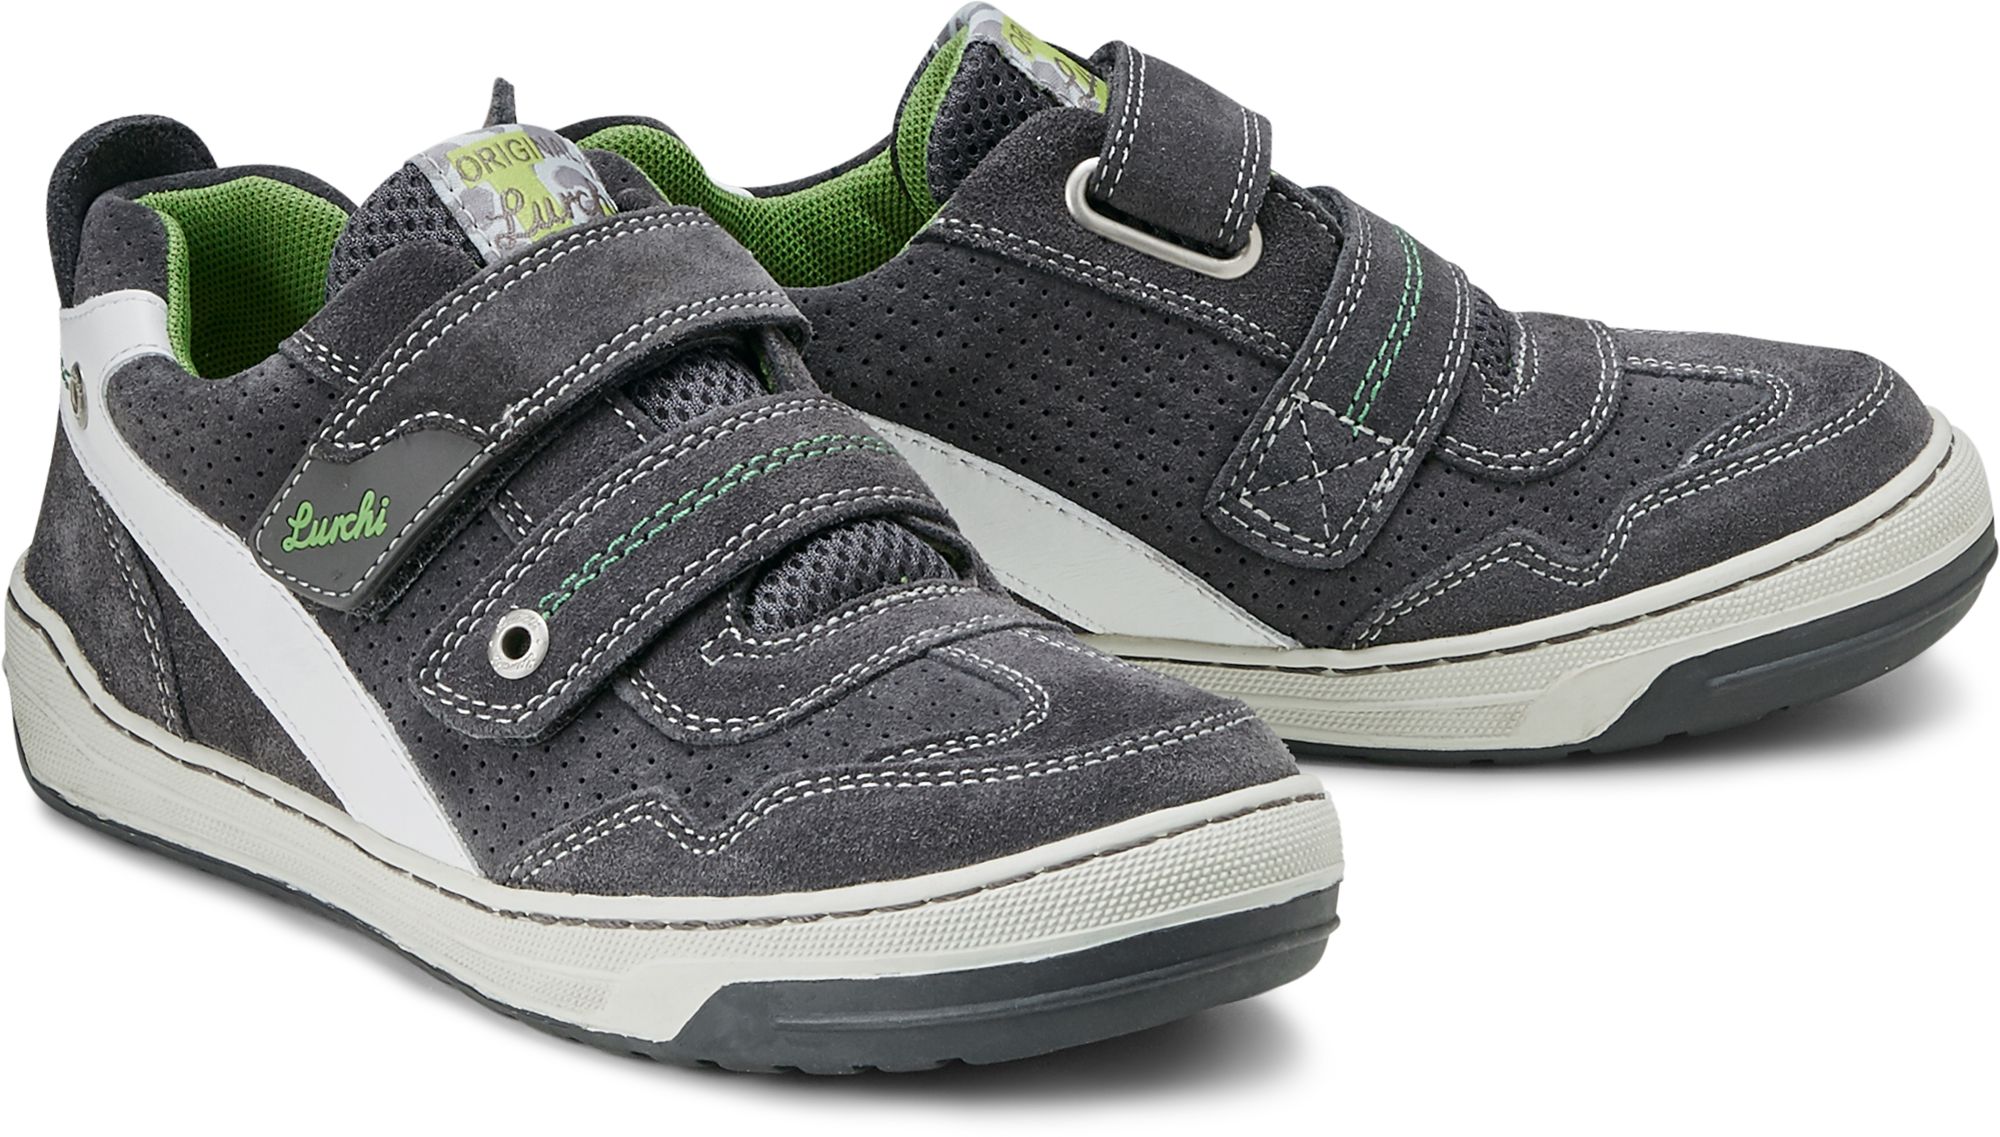 Schuhe Klett grau Gr. von BRUCE 27,28,29,30,31,32,33,34,35 Jungen. Lurchi kaufen dunkel für online in Sneaker